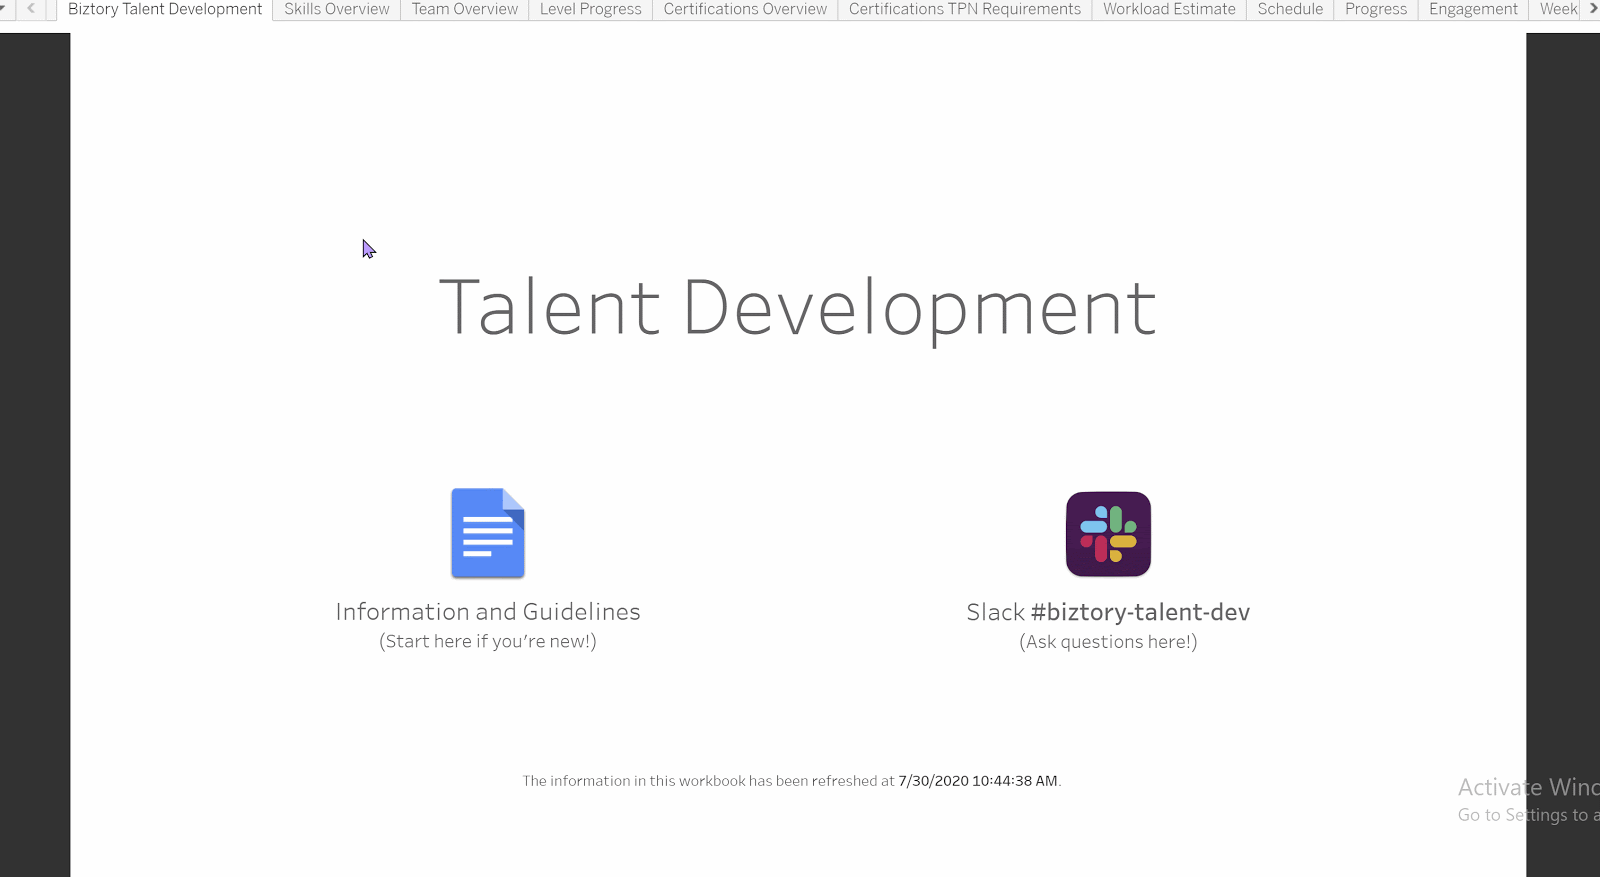 Biztory Talent Development program in Tableau